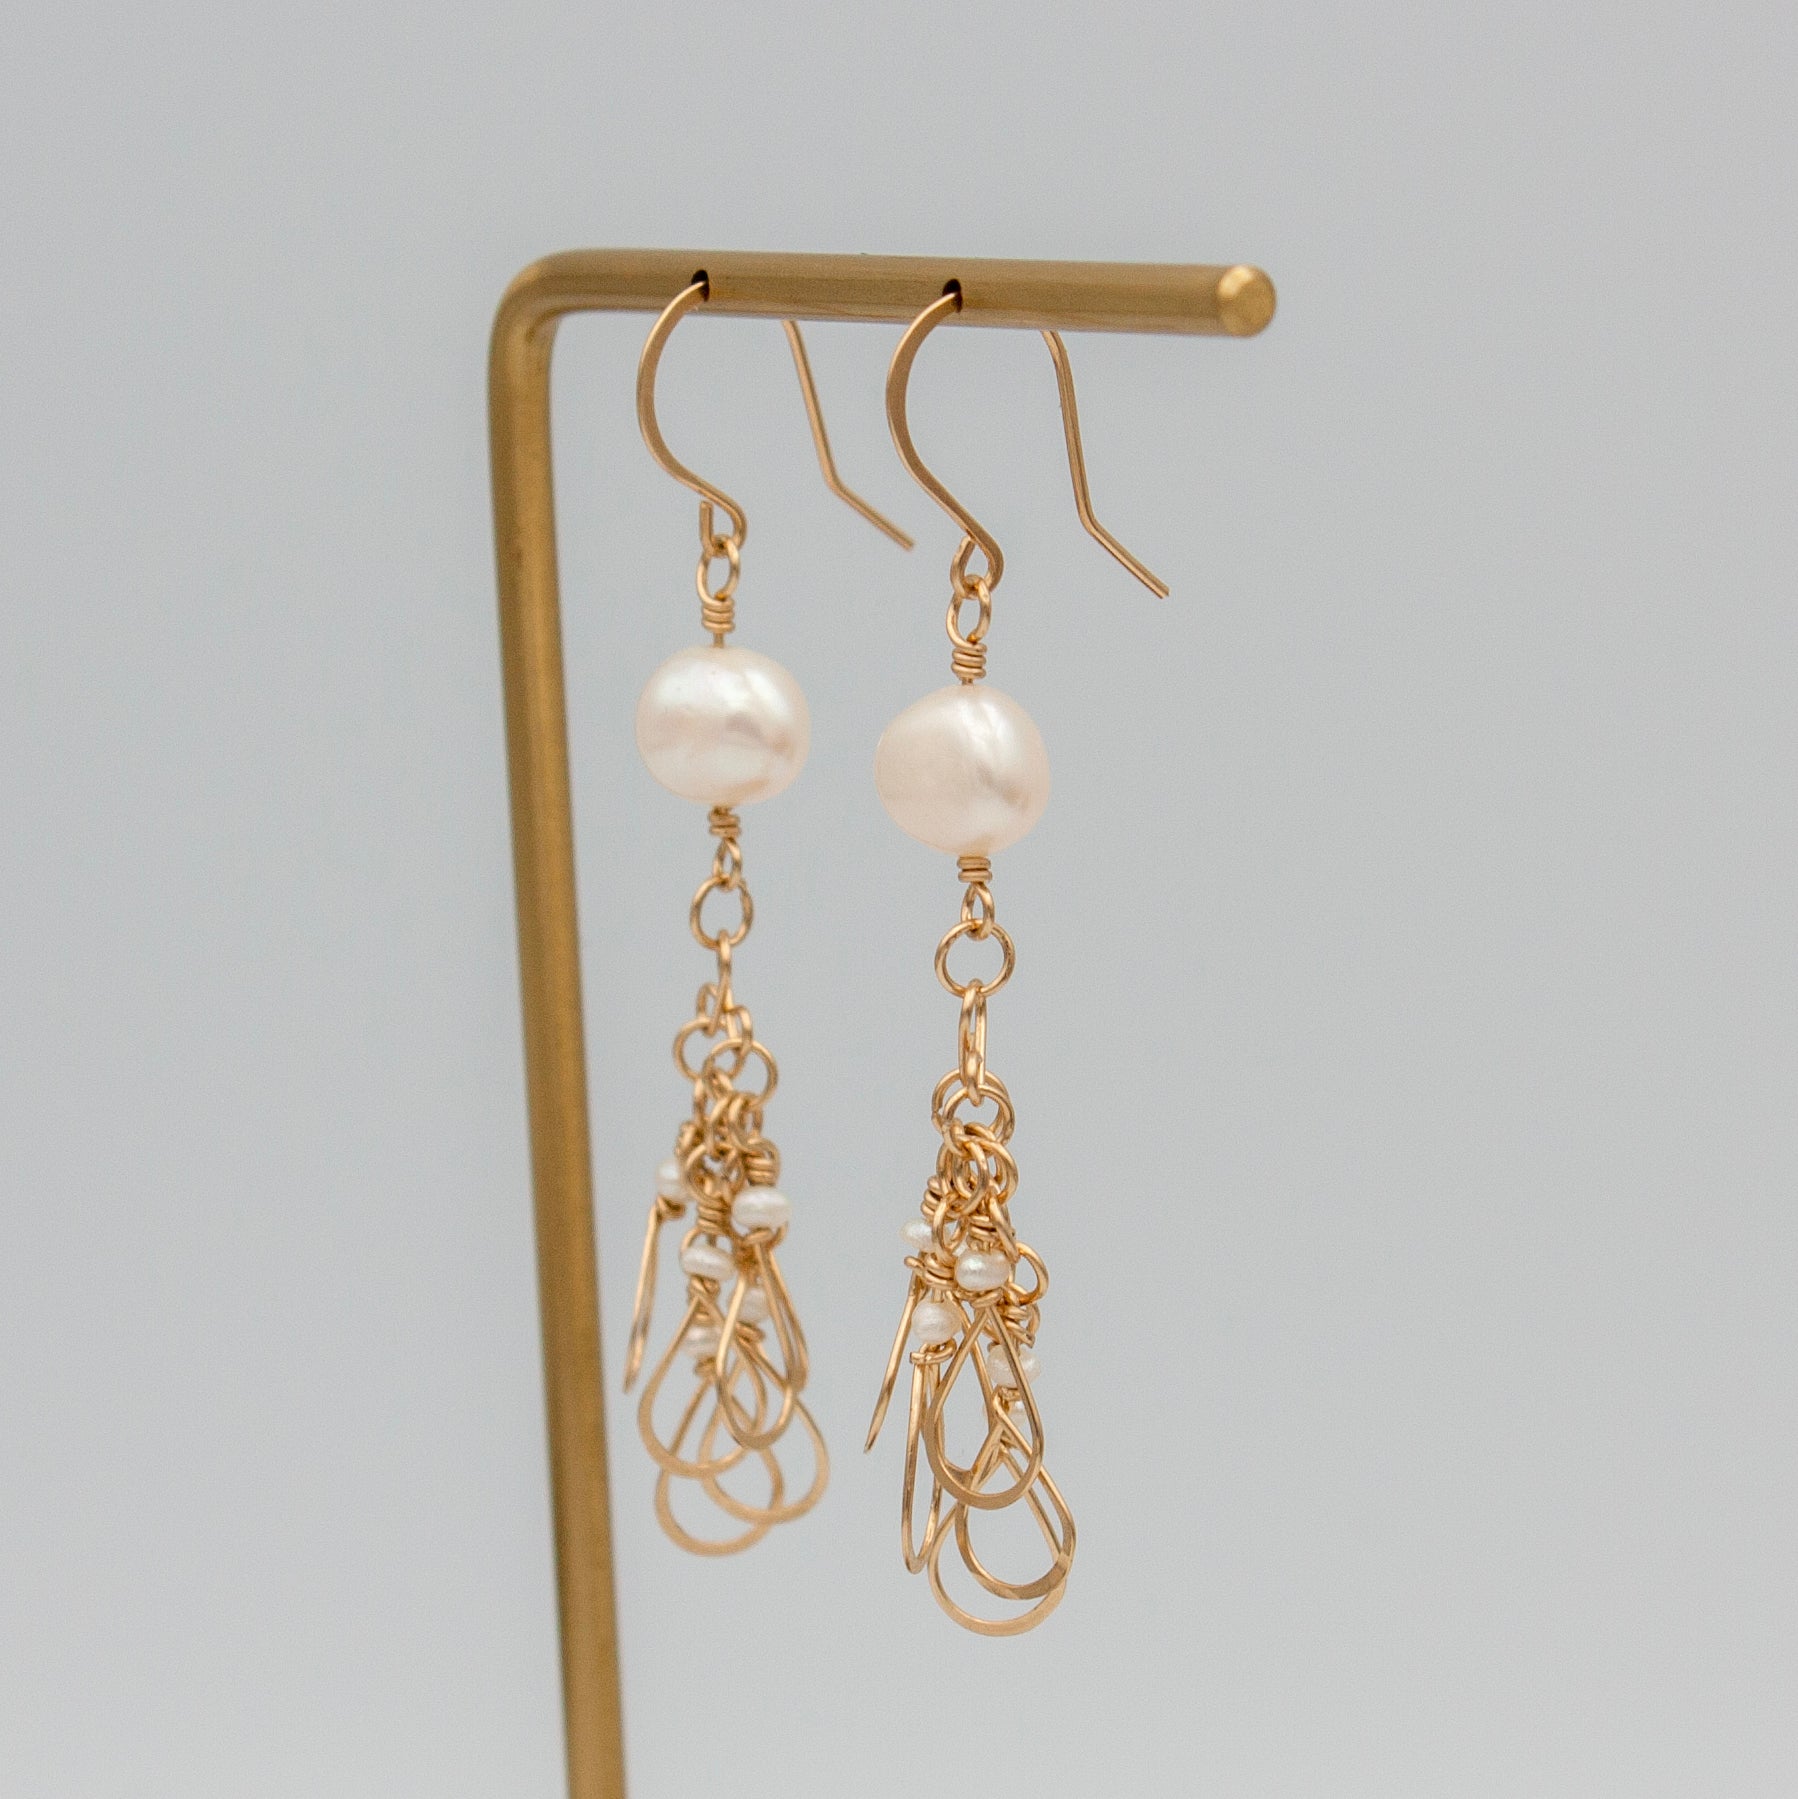 Freshwater Pearl Drop Earrings in 14k Gold Filled - 2.25" Fishhook Back Bijou Her